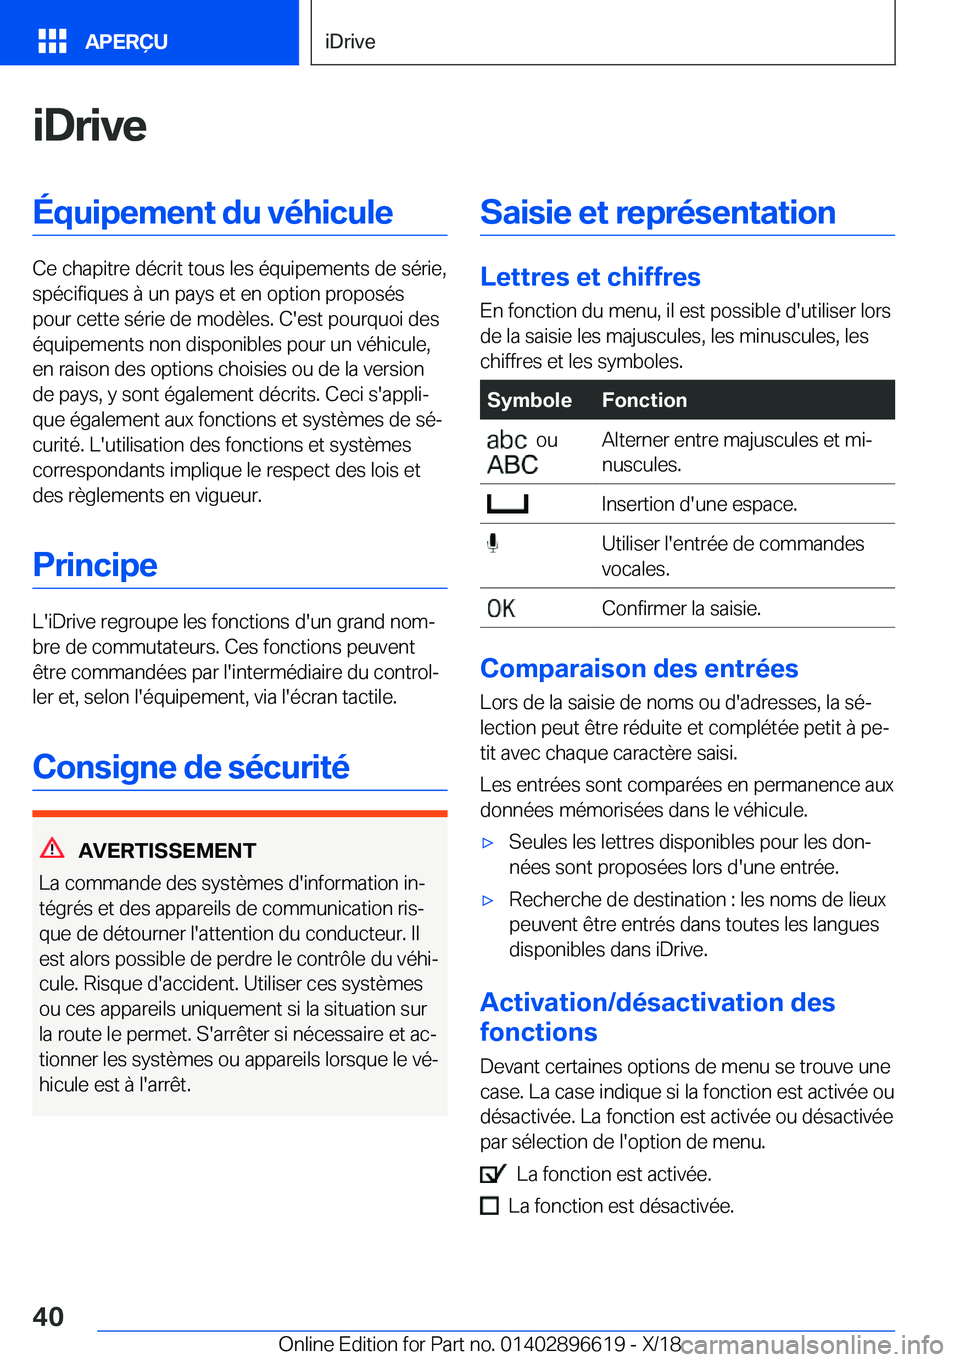 BMW M2 2019  Notices Demploi (in French) �i�D�r�i�v�e�É�q�u�i�p�e�m�e�n�t��d�u��v�é�h�i�c�u�l�e
�C�e��c�h�a�p�i�t�r�e��d�é�c�r�i�t��t�o�u�s��l�e�s��é�q�u�i�p�e�m�e�n�t�s��d�e��s�é�r�i�e�,�s�p�é�c�i�f�i�q�u�e�s��